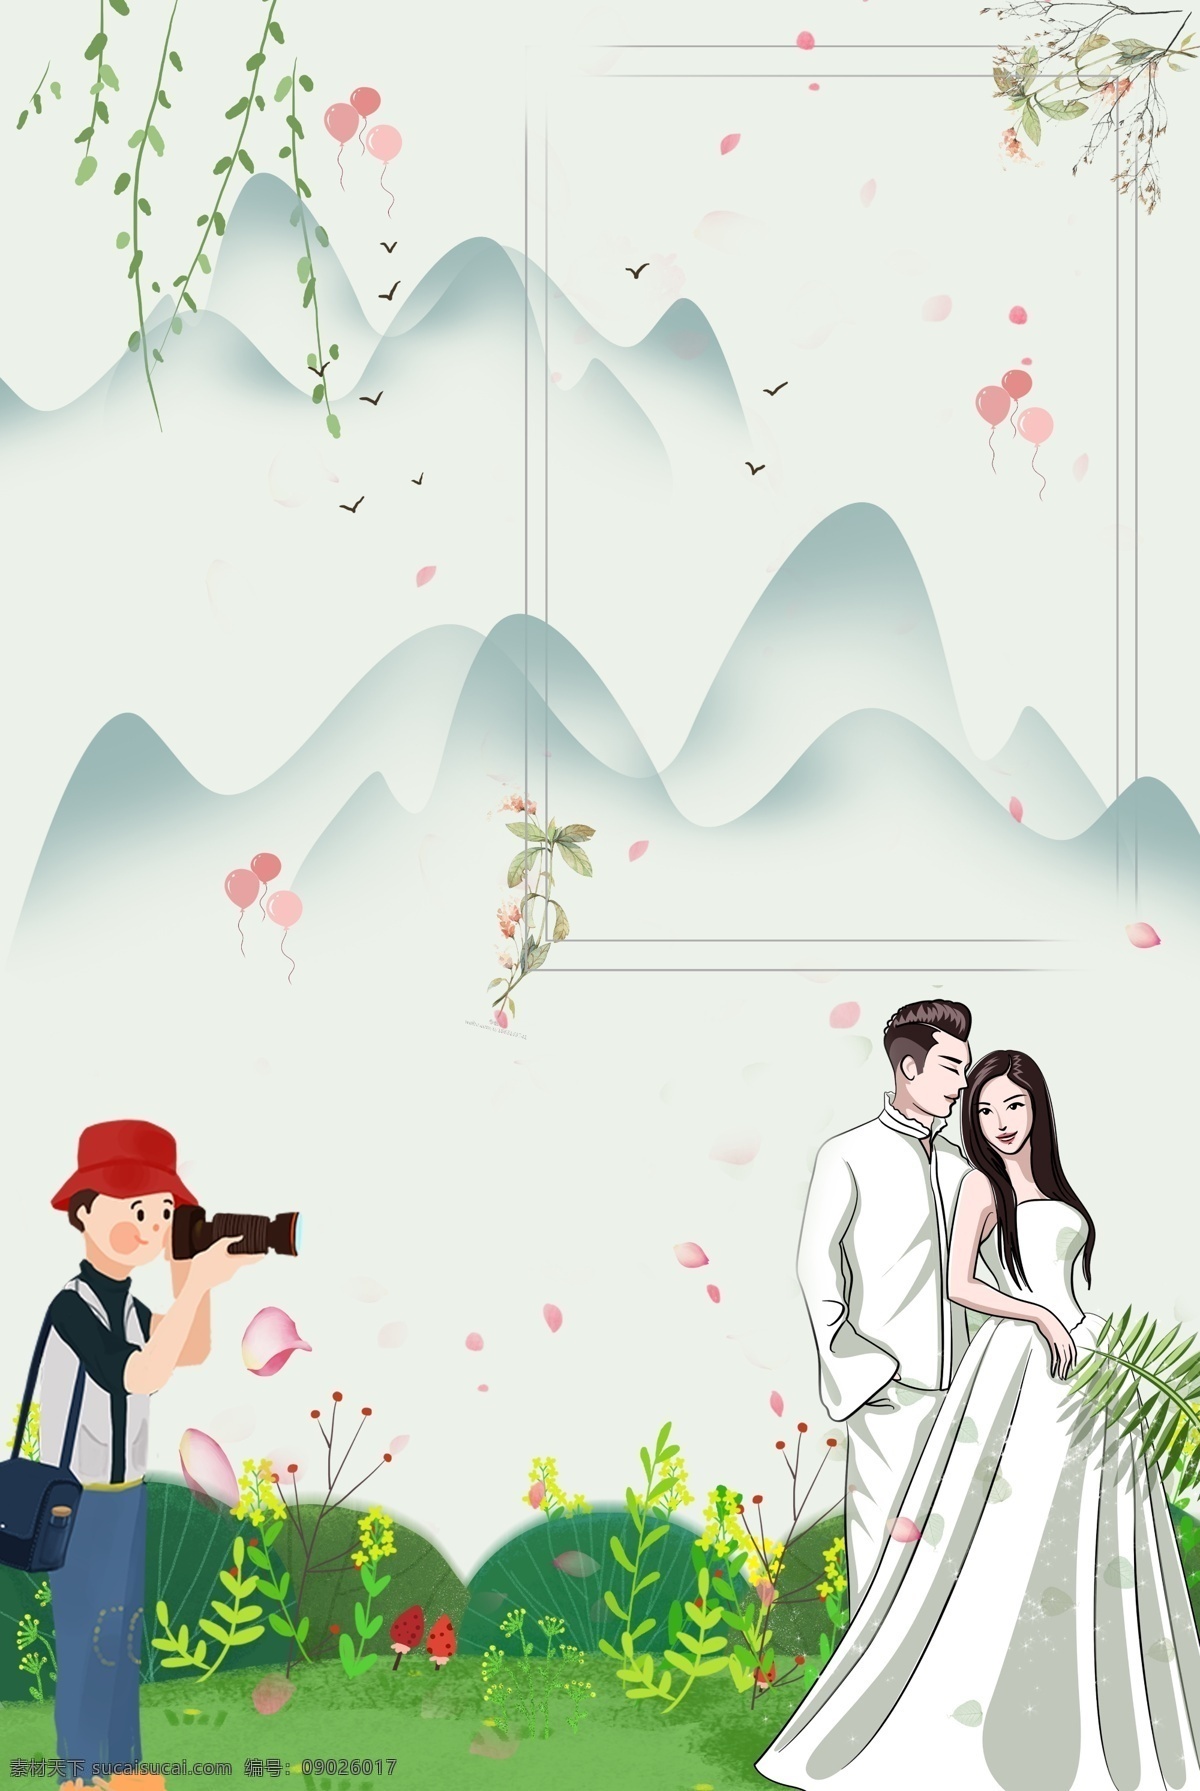 小 清新 520 情人节 户外 拍 婚纱照 海报 摄影师 新郎 新娘 拍照 远山 草地 野花 唯美